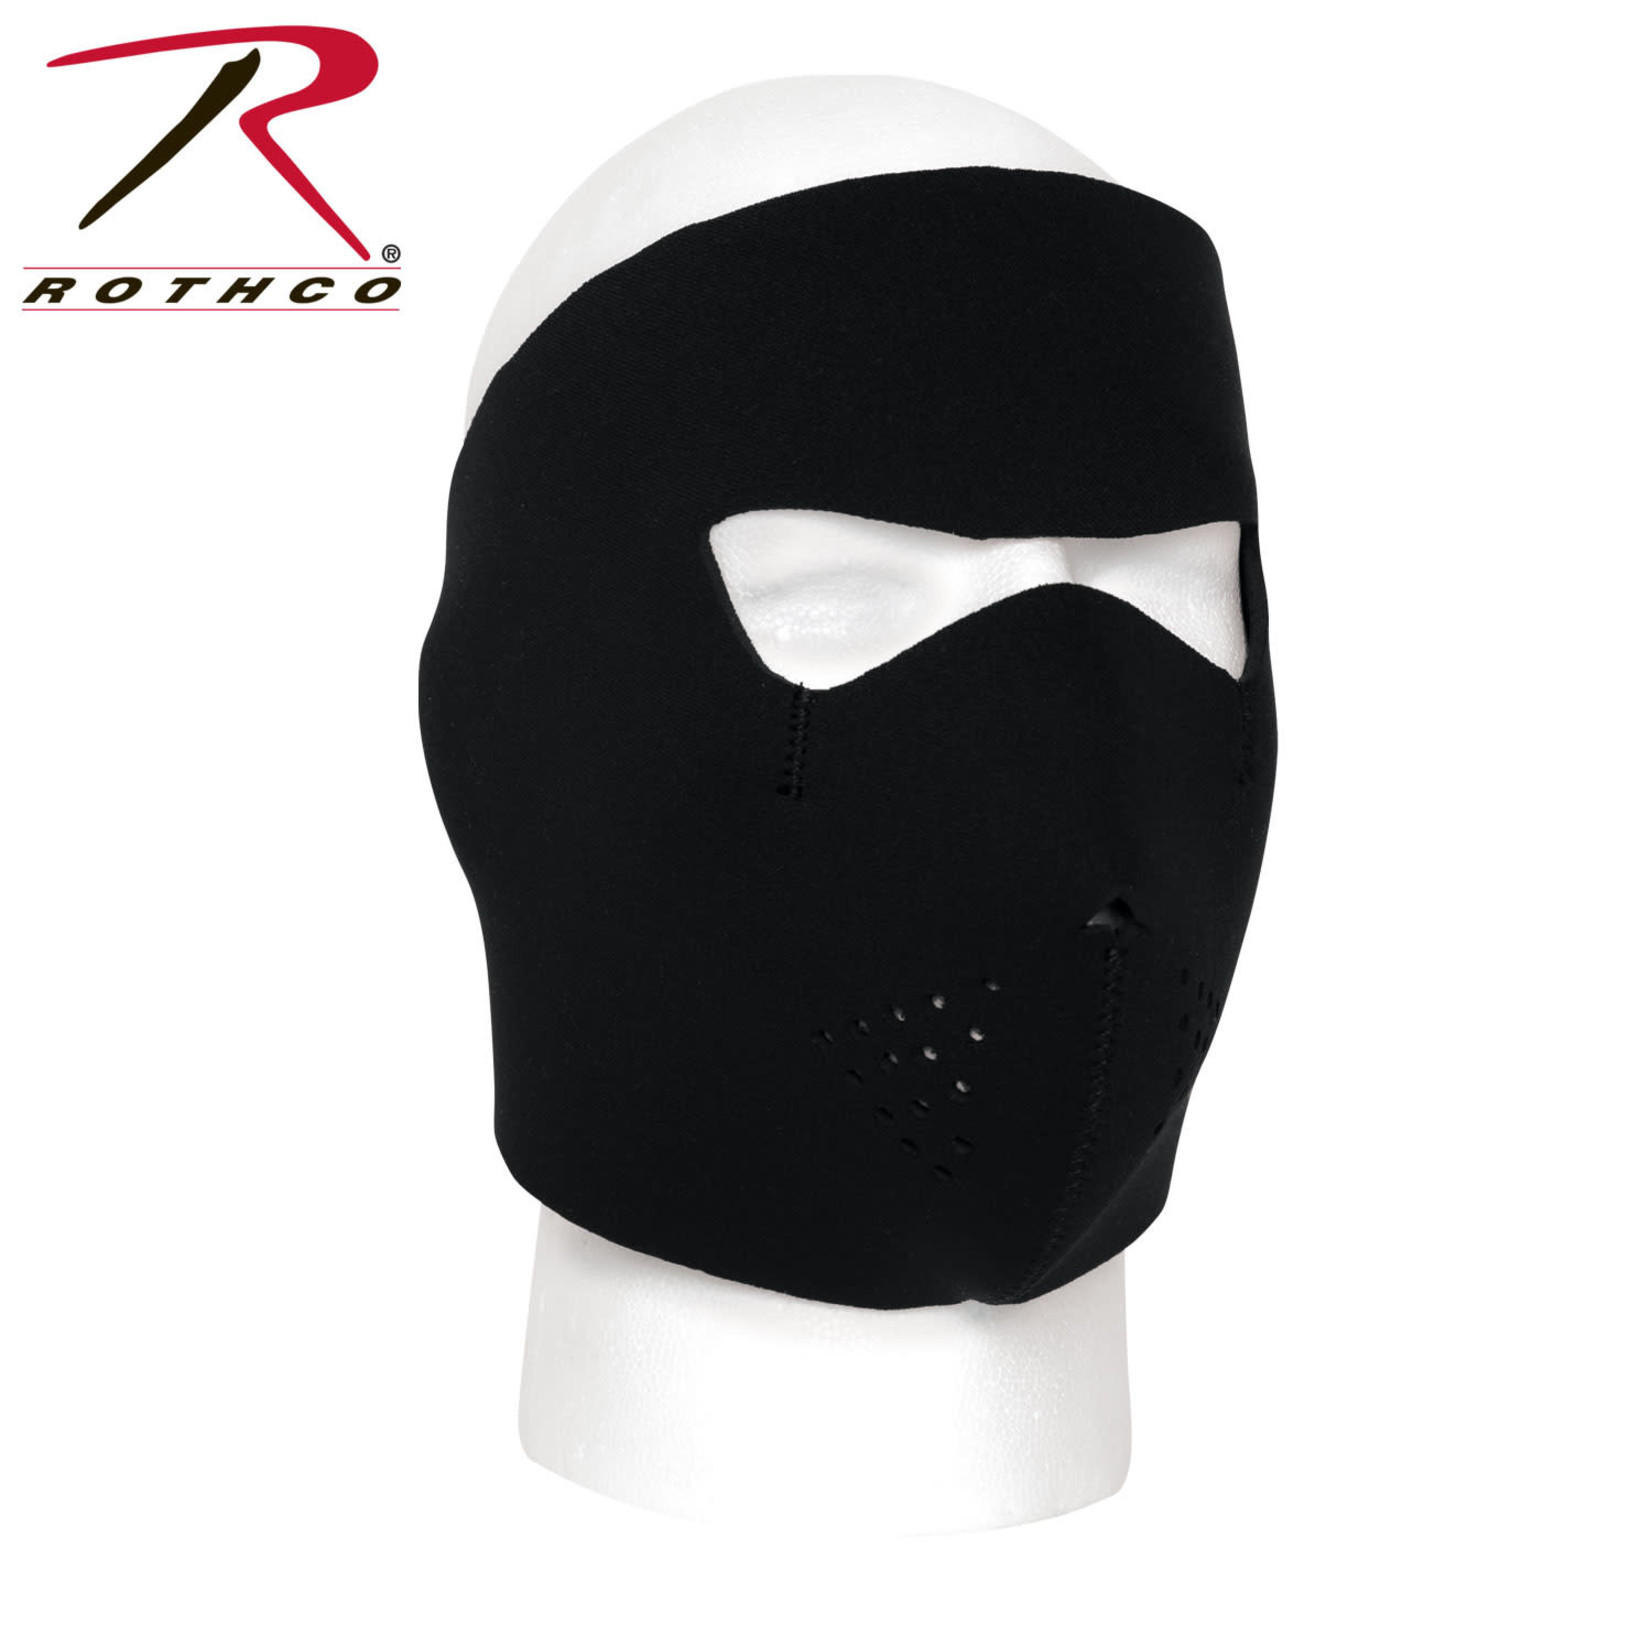 Rothco Rothco Neoprene Full Face Mask